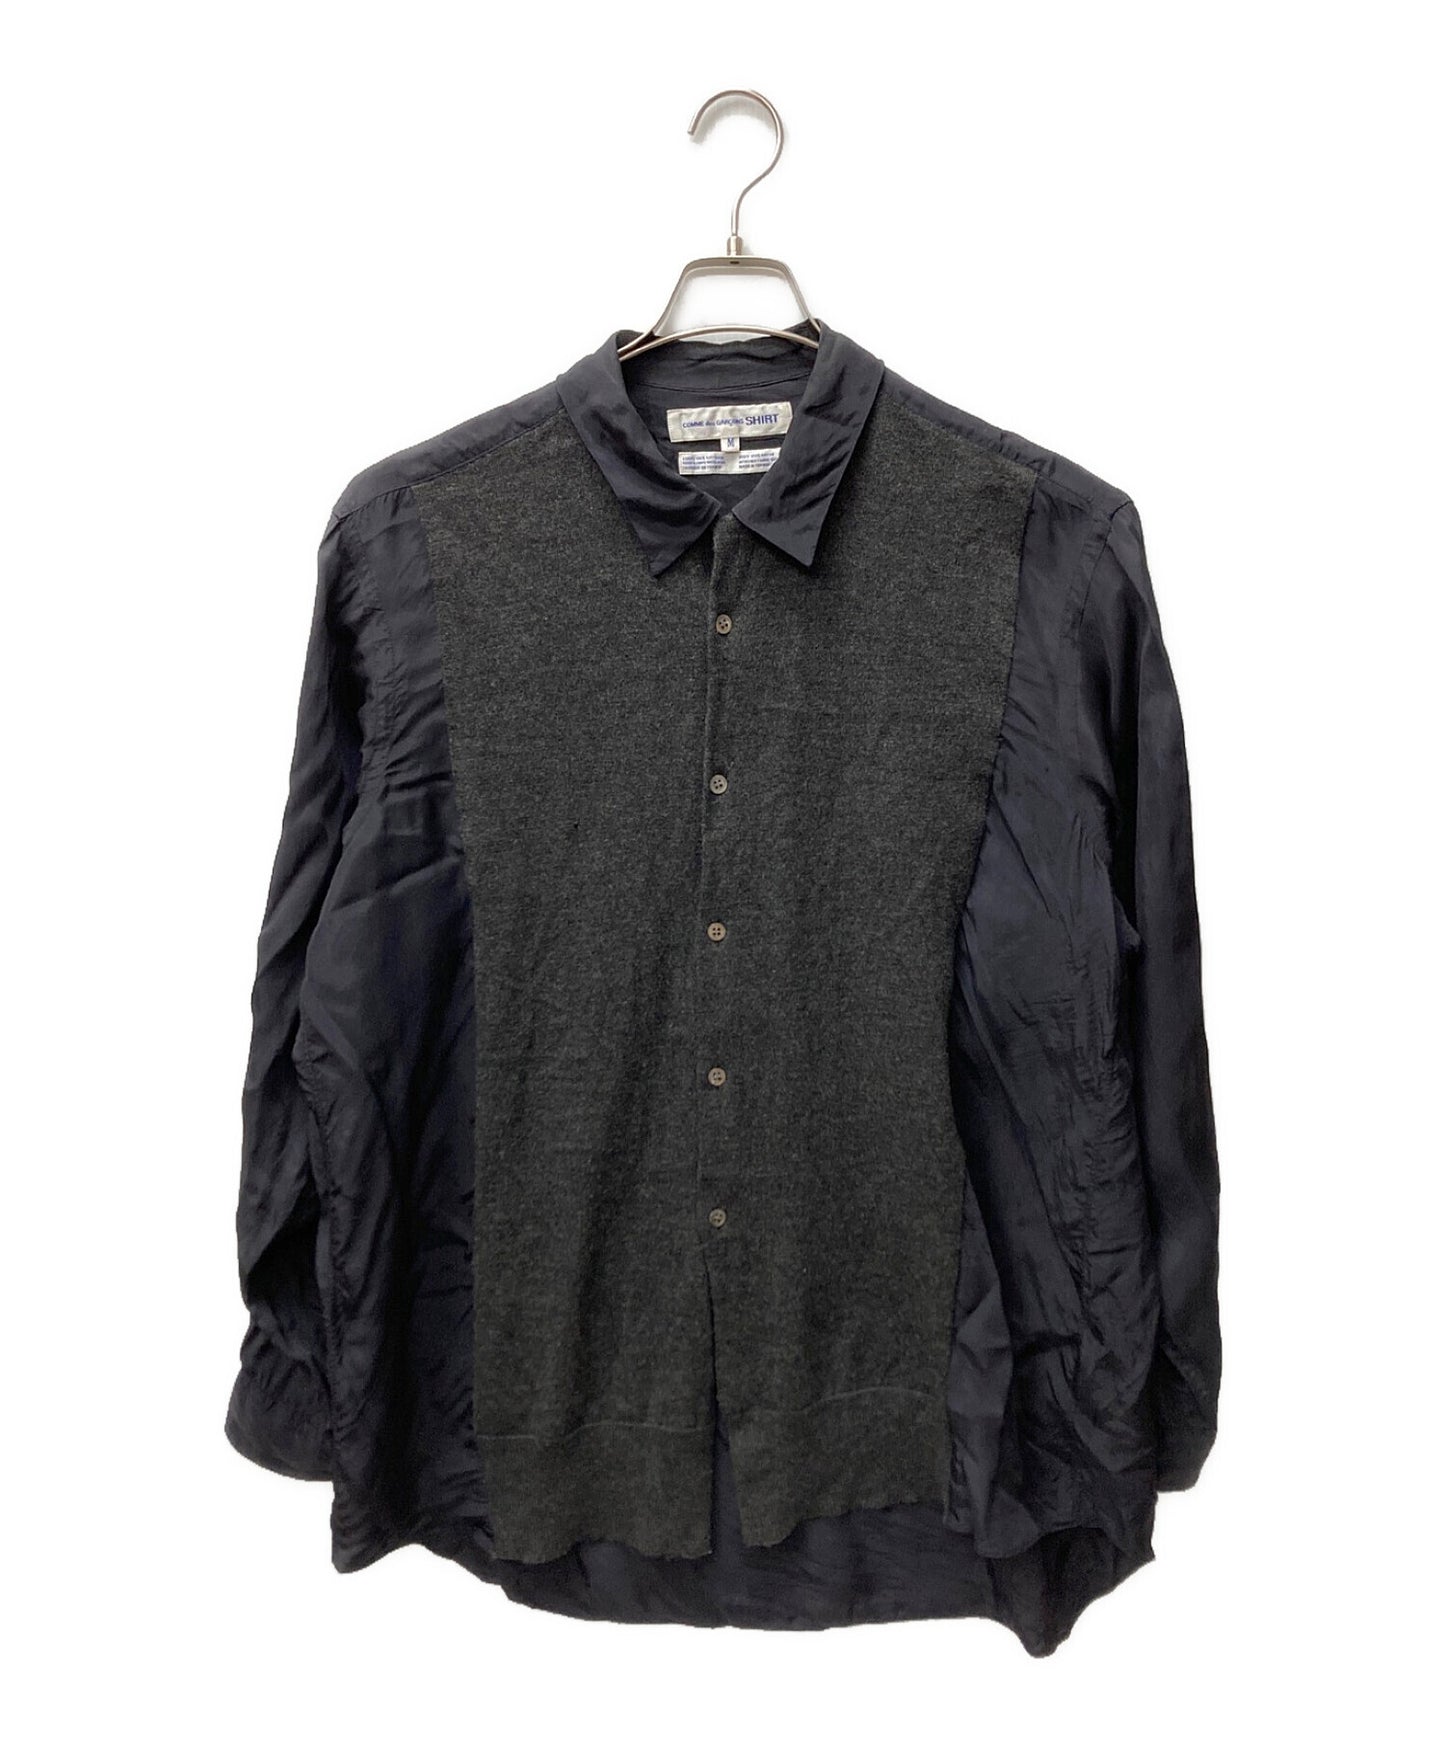 Comme des Garcons衬衫80年代的针织码头人造丝衬衫